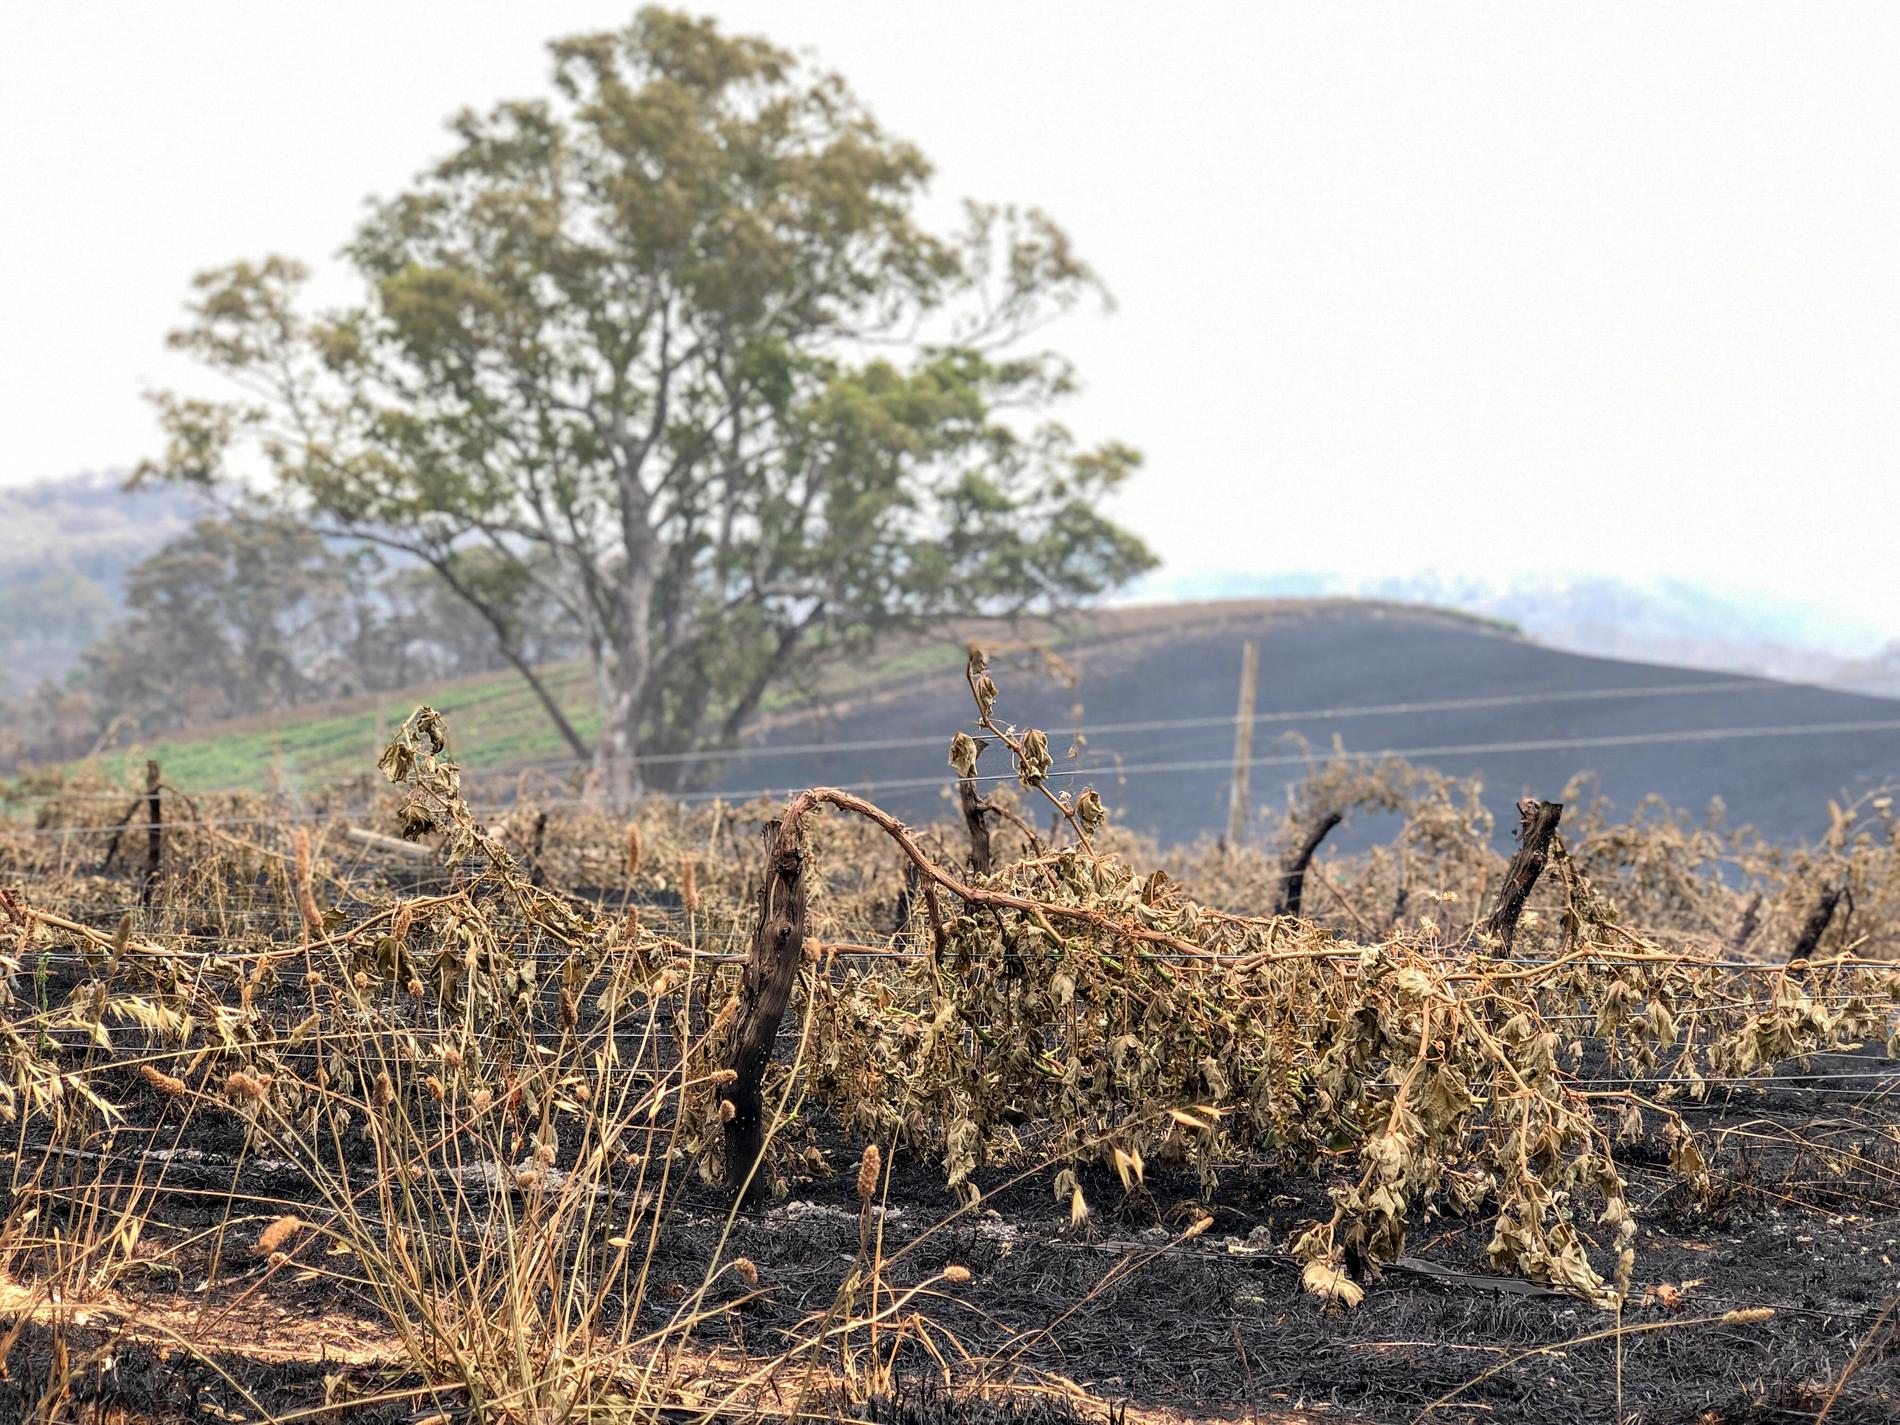 Delar av Adelaide Hills i South Australia, som så här års brukar vara prunkande grönt, skiftar i brunsvart efter de katastrofala bränderna.